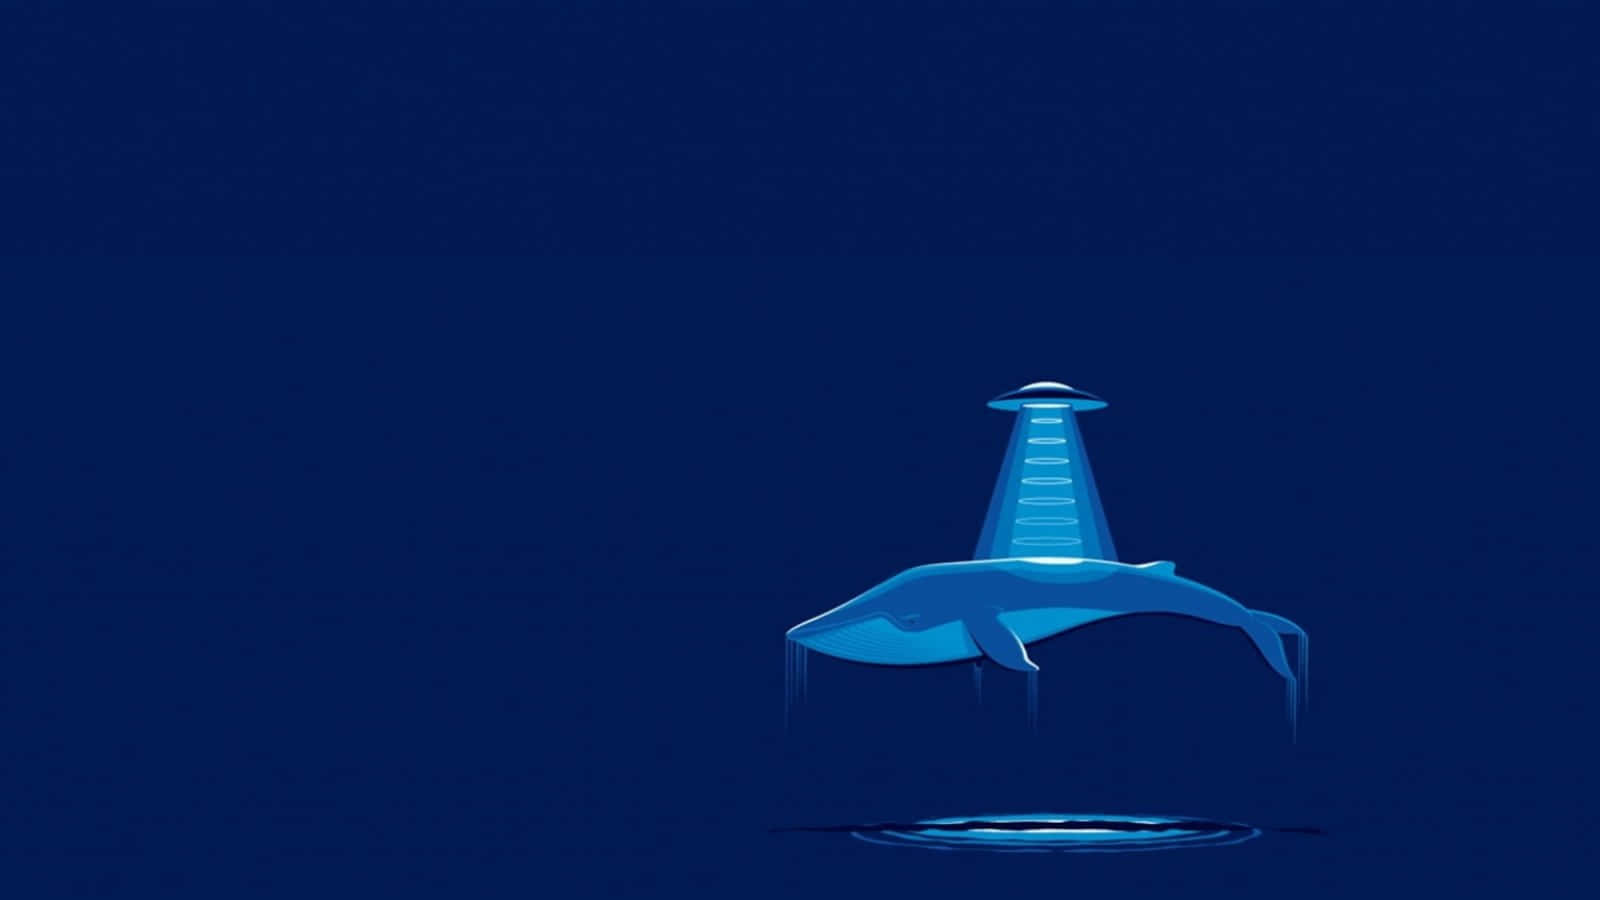 Blue Whale Alien Abduction Digital Art Picture